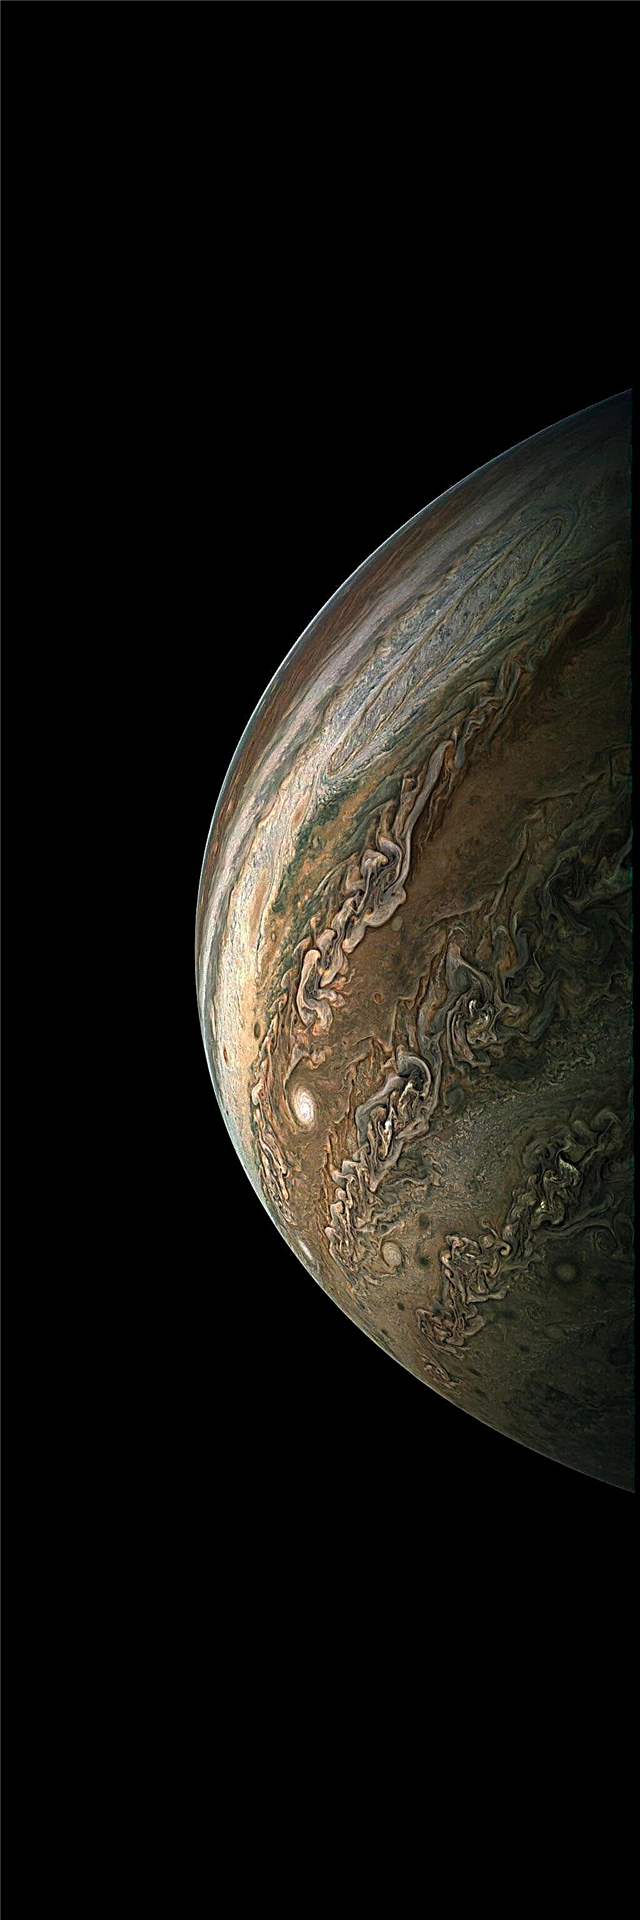 Juno Probe dokončila 10. vedecký prelet Jupitera; Občania vytvárajú úžasné obrázky